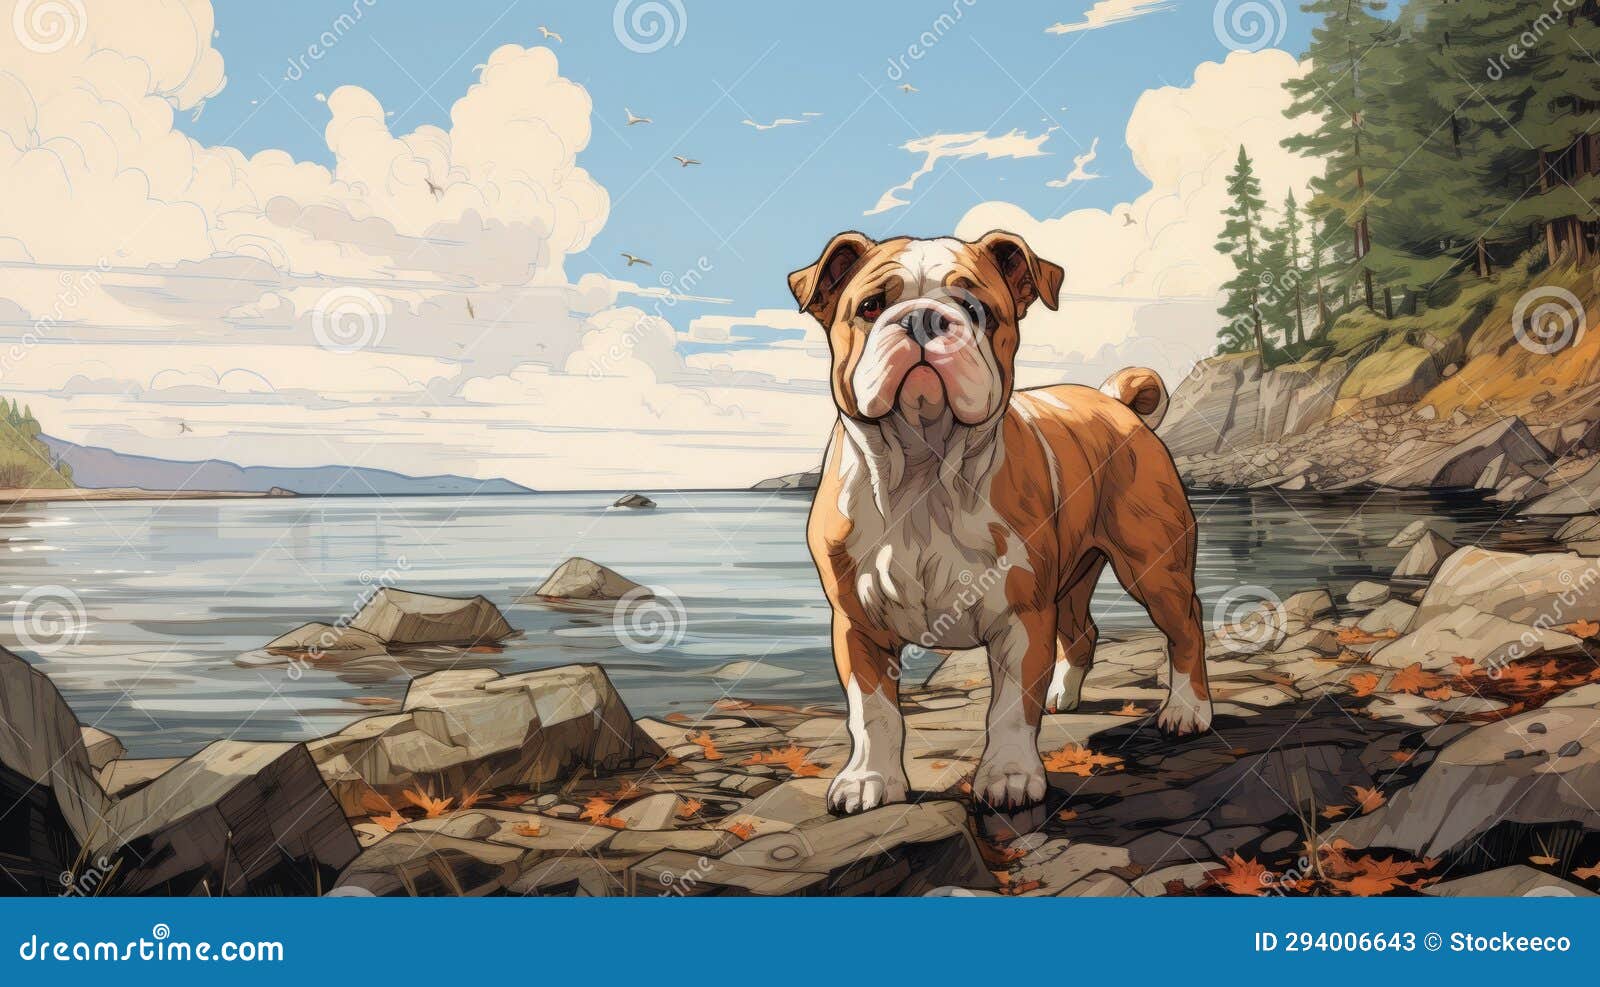 nostalgic bulldog puppy  on british columbia shores